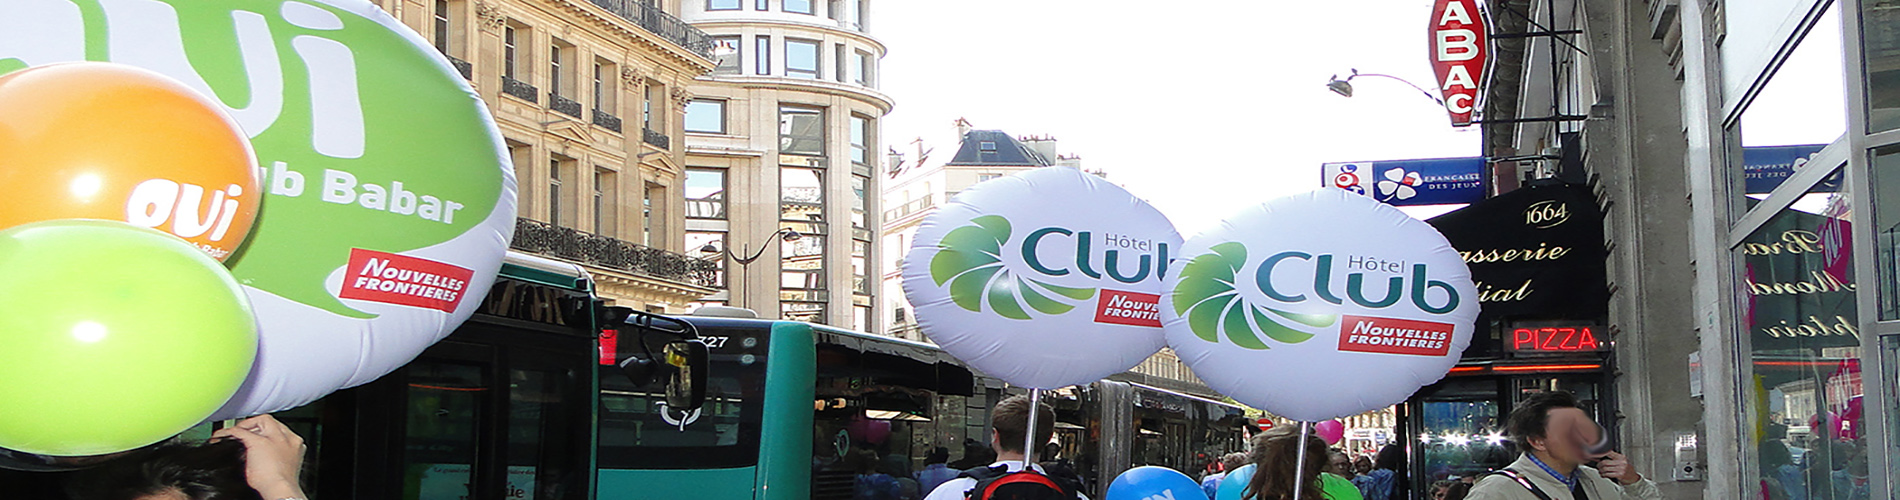 Ballon gonflable géant posé sur trépied pour votre publicité